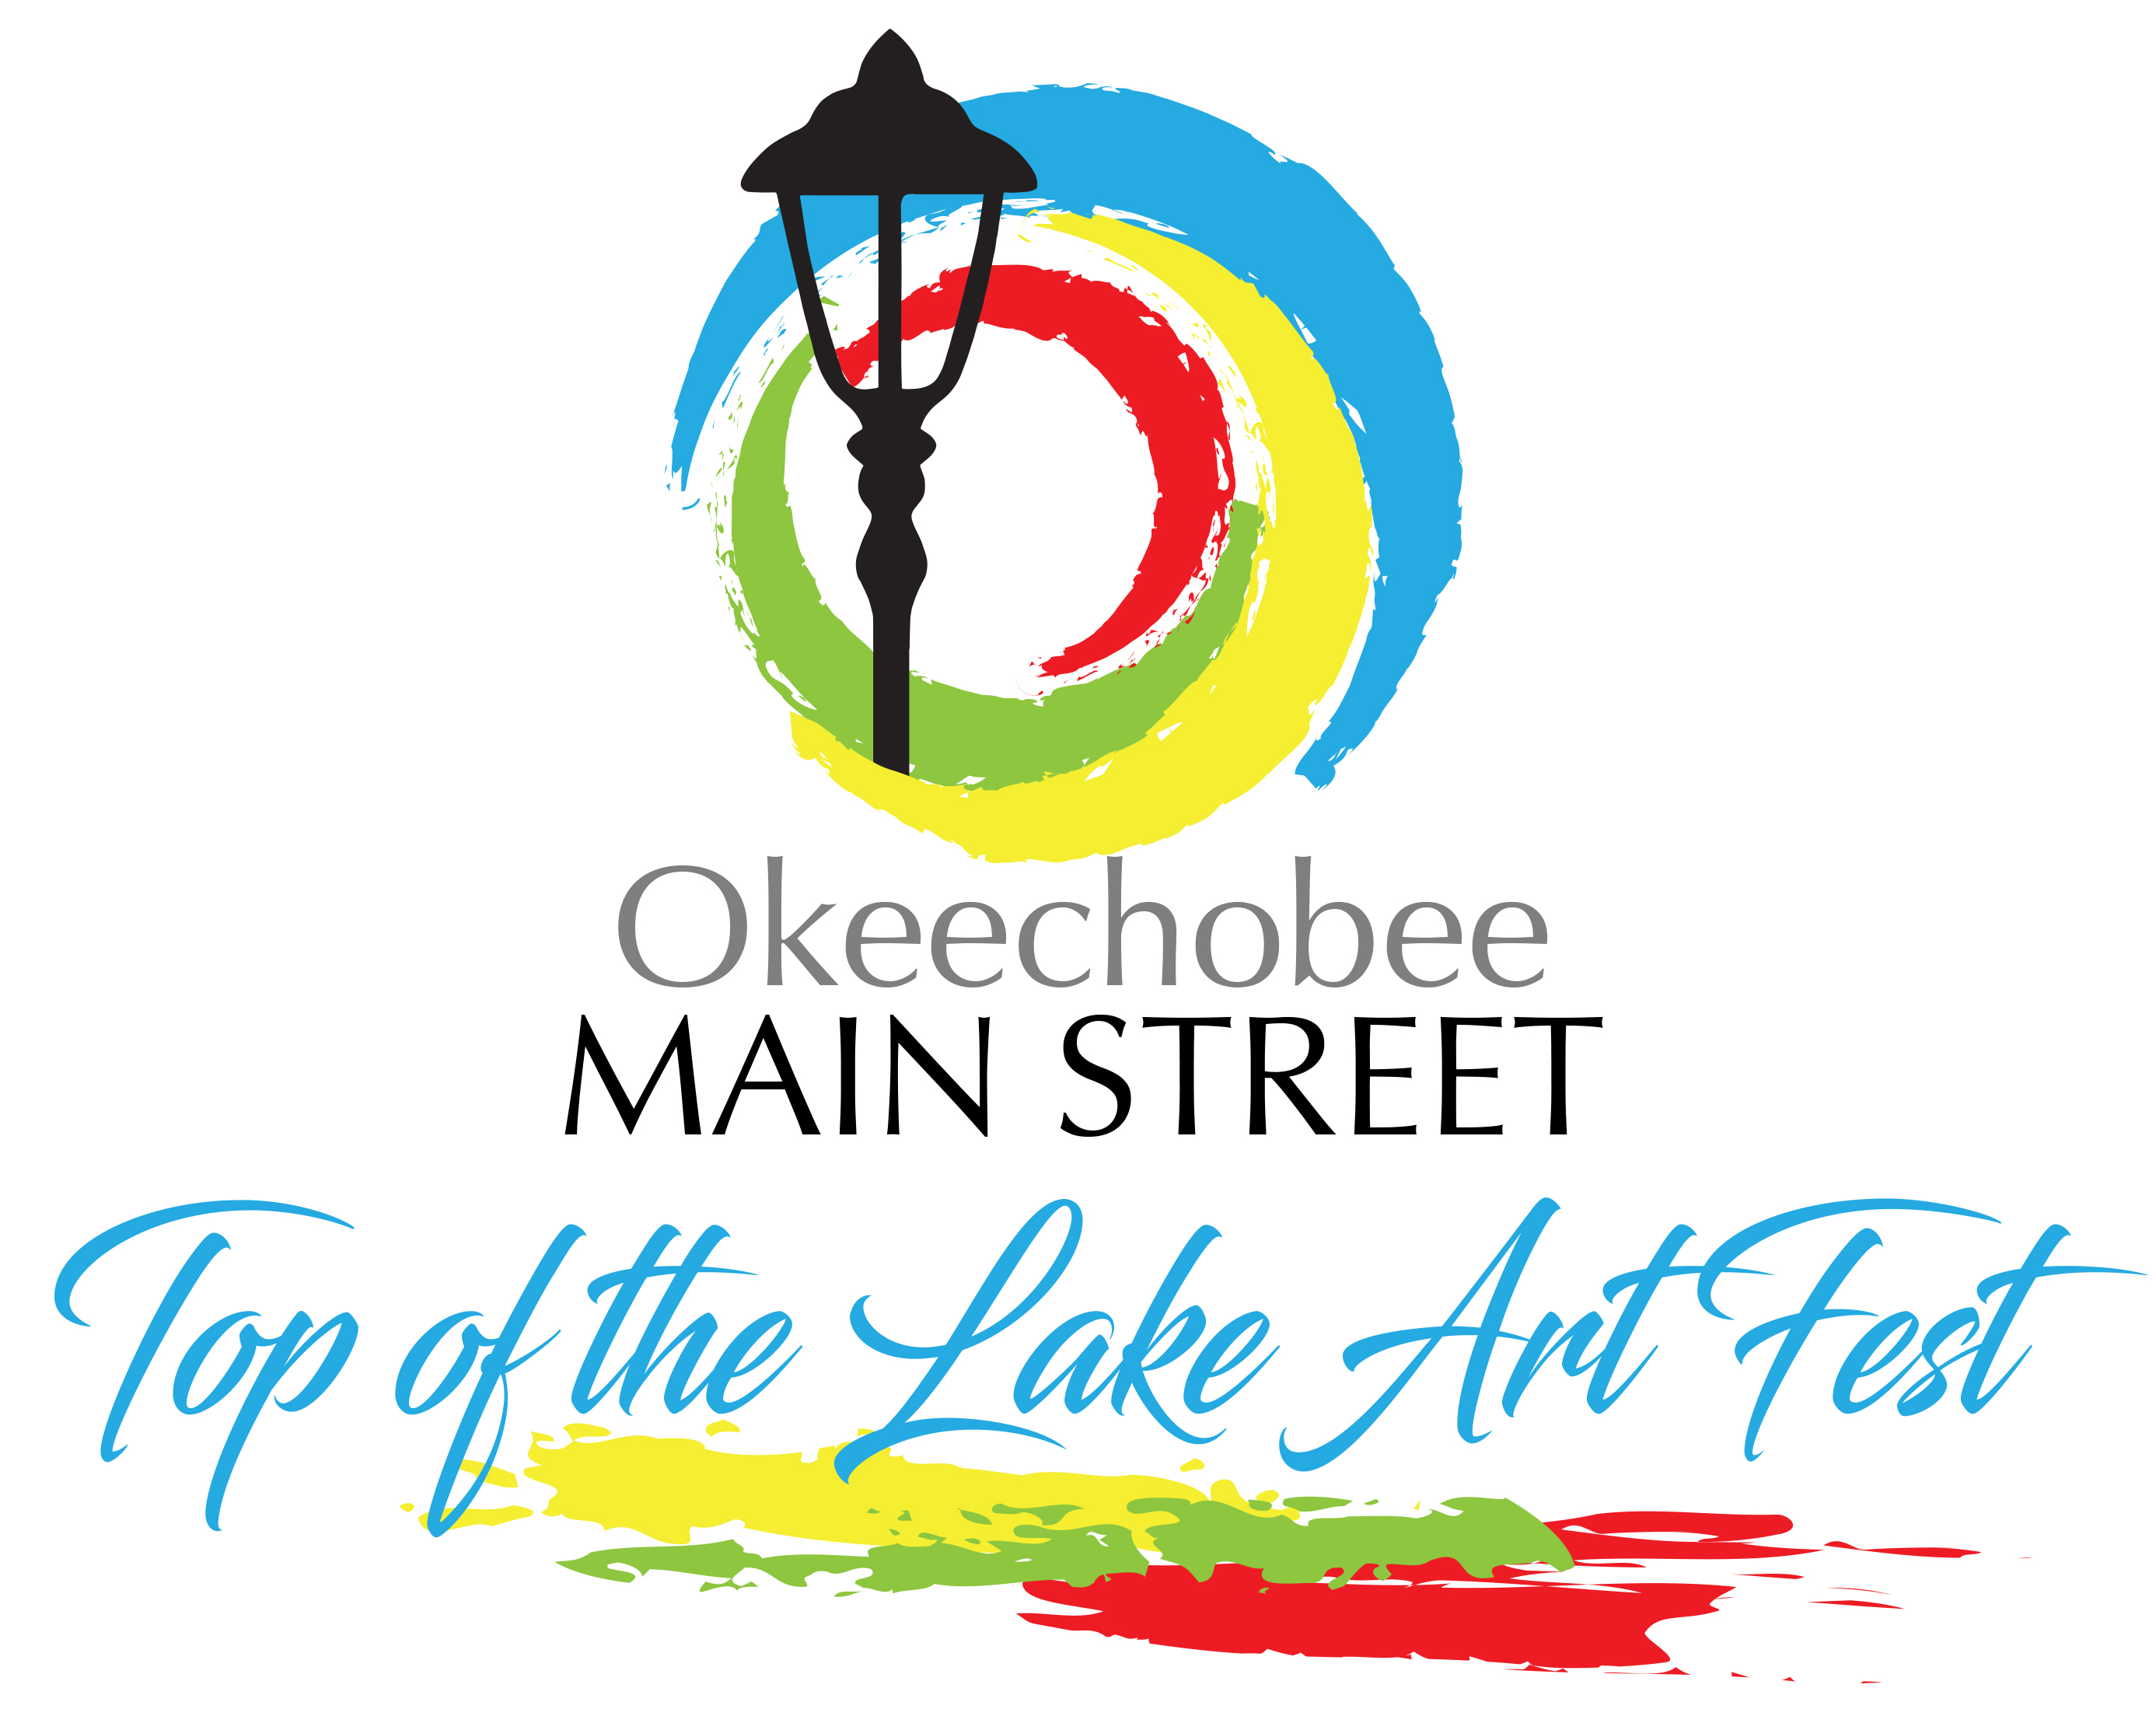 Okeechobee Main Street Inc. Events